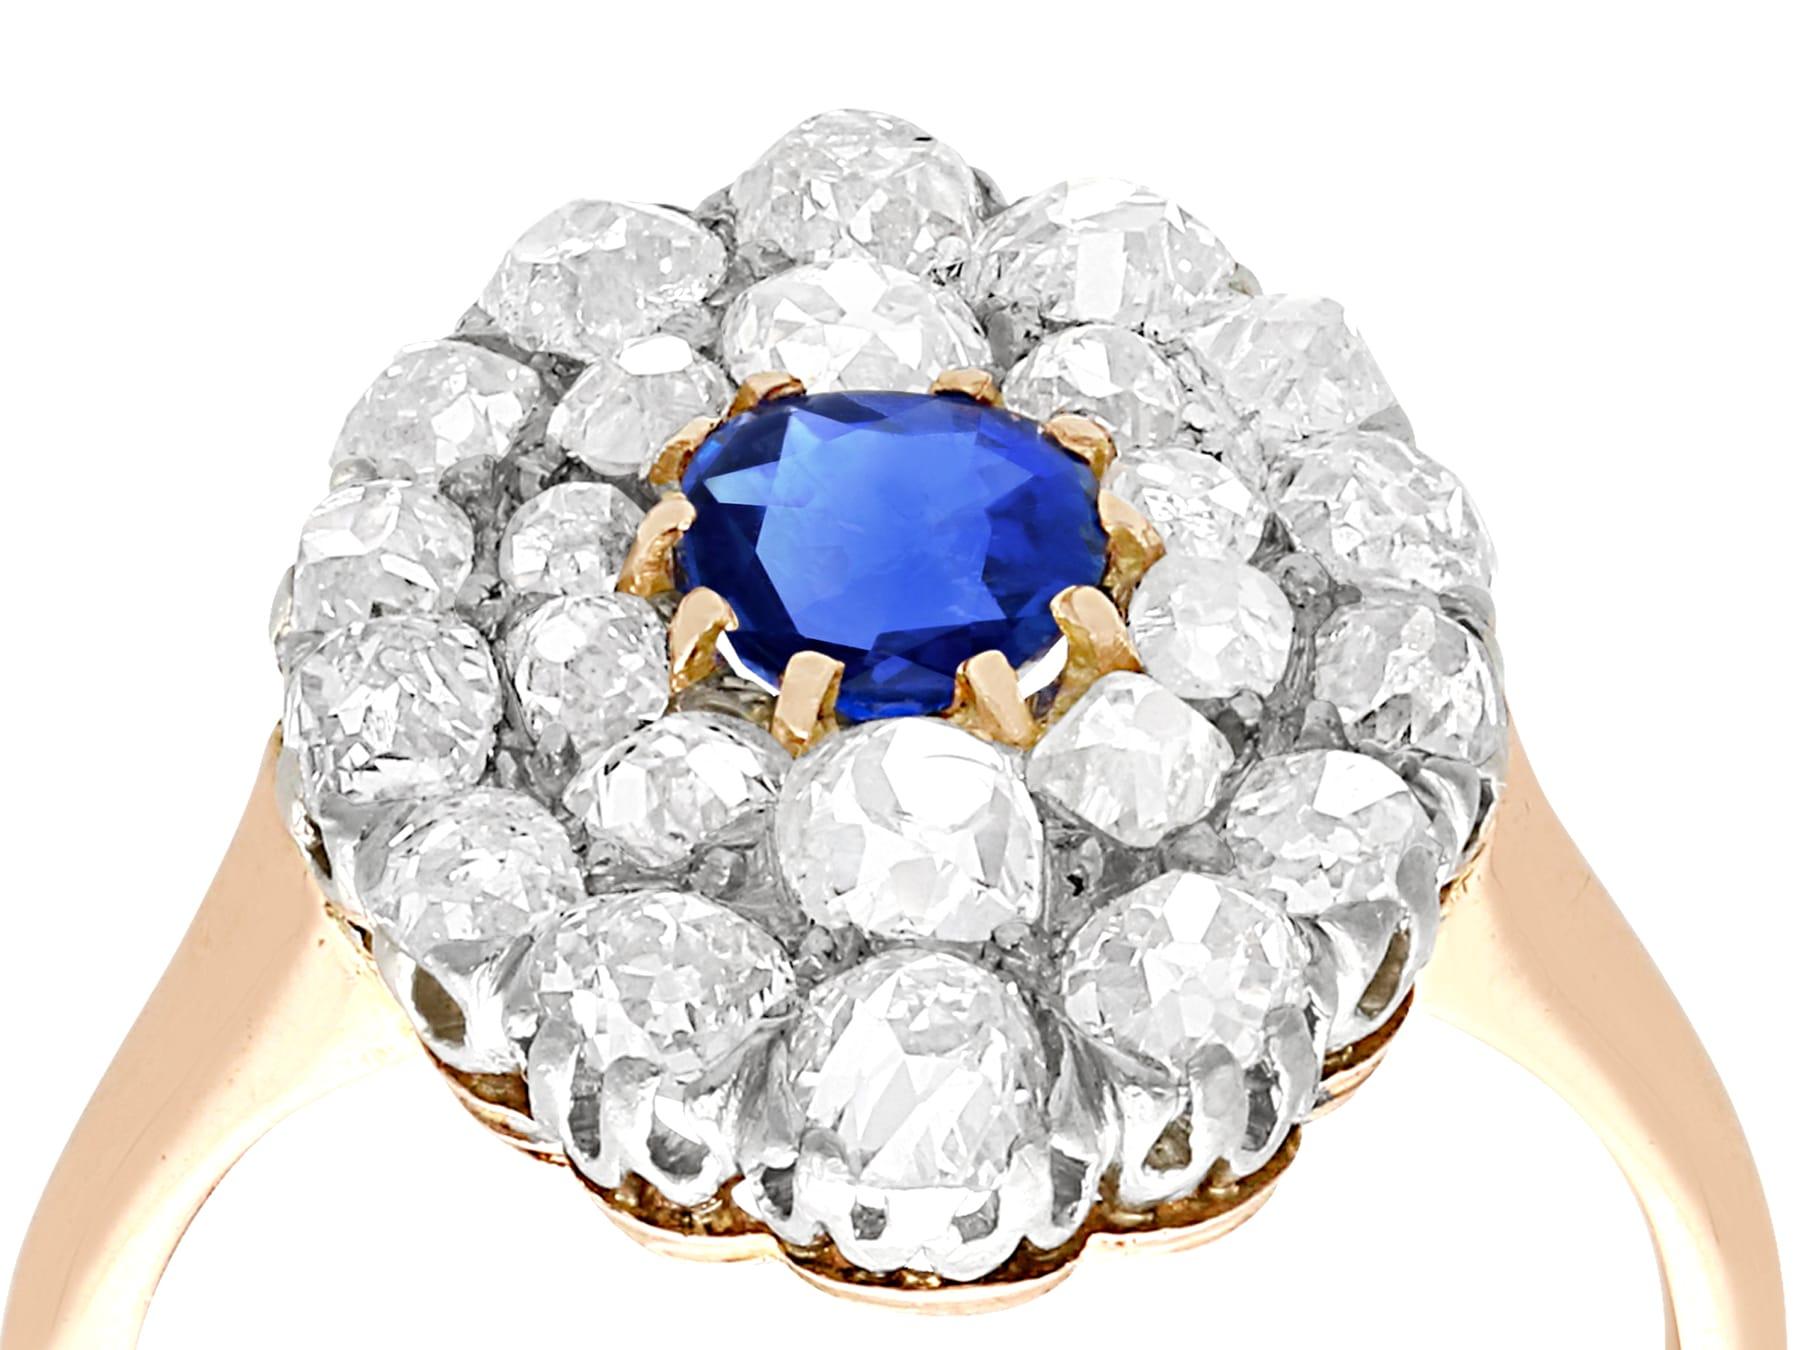 Eine atemberaubende, feine und beeindruckende antike 0,45 Karat blauer Saphir und 2,76 Karat Diamant, 18 Karat Roségold und Platin gesetzt Cluster-Ring; Teil unserer antiken Schmuck und Nachlassschmuck Sammlungen.

Dieser atemberaubende Ring mit